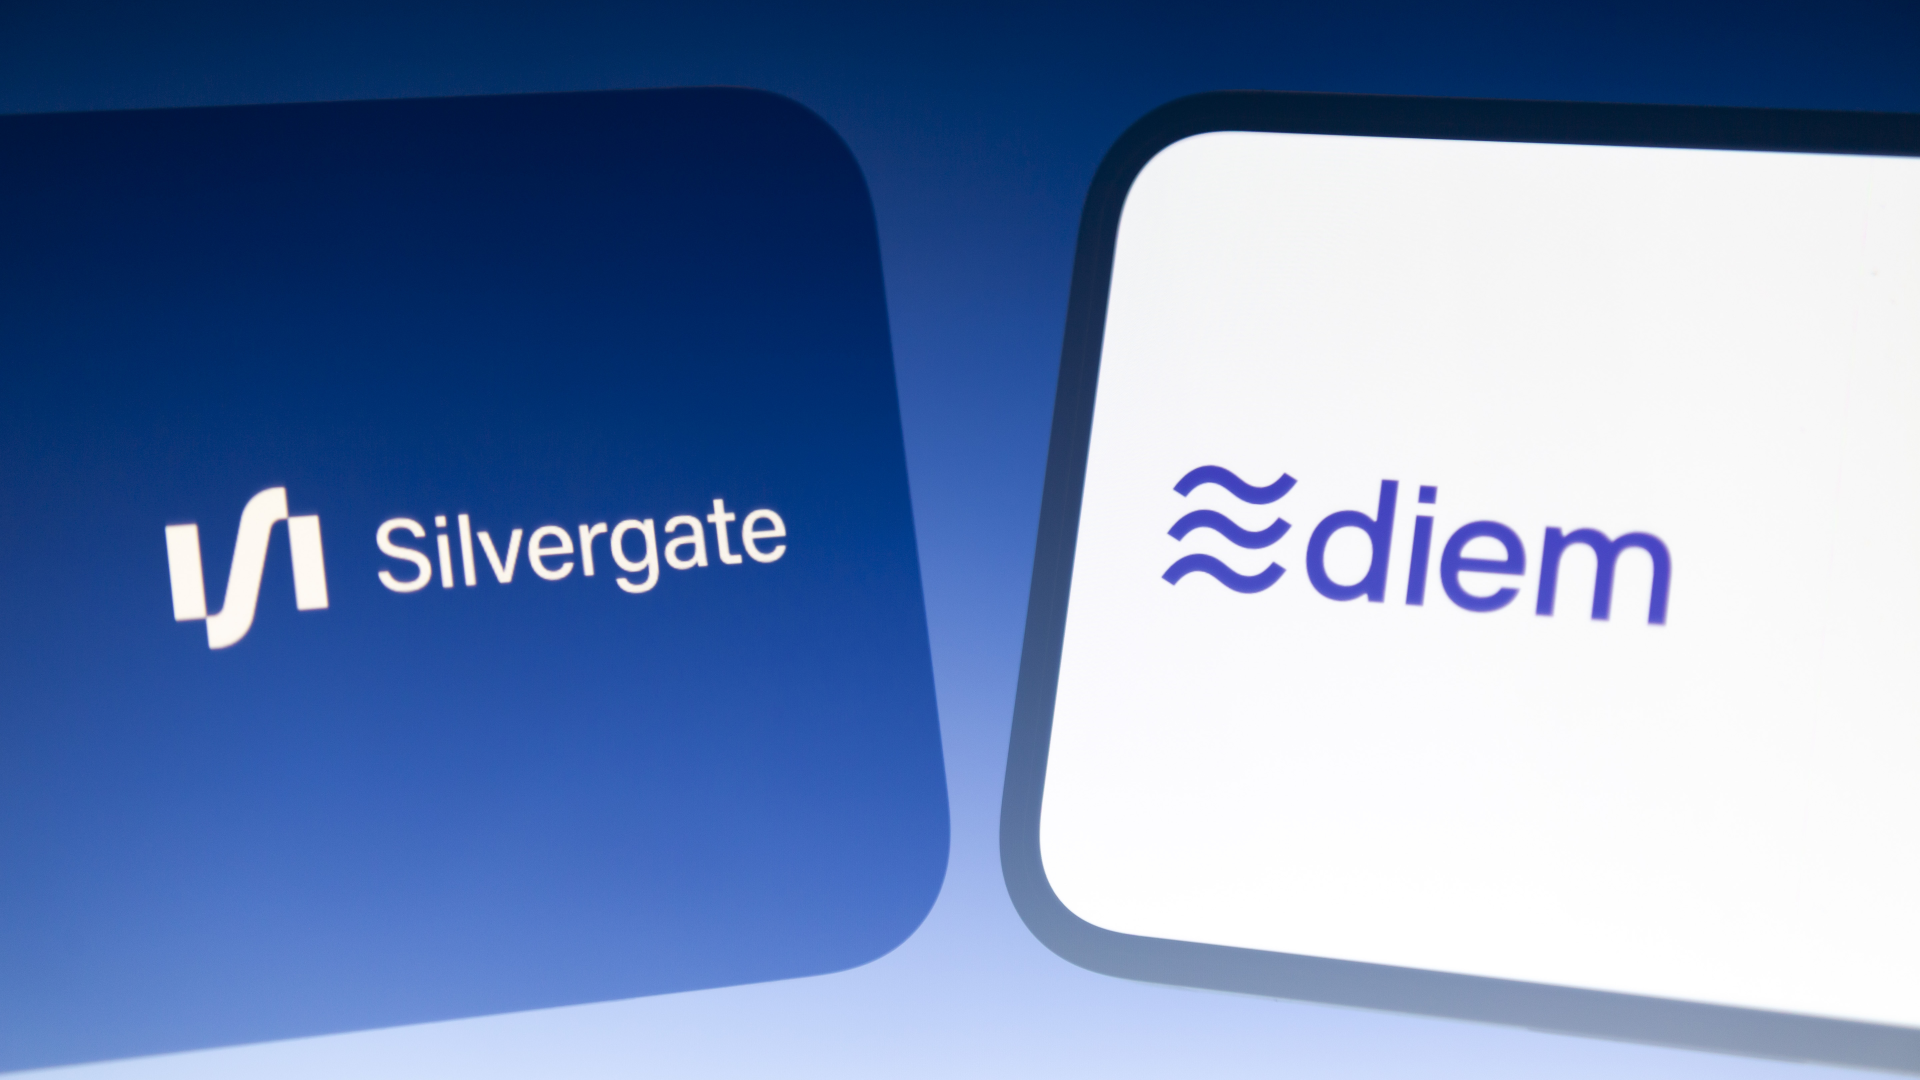 Die Logos von Silvergate und Diem | Foto: picture alliance / ZUMAPRESS.com